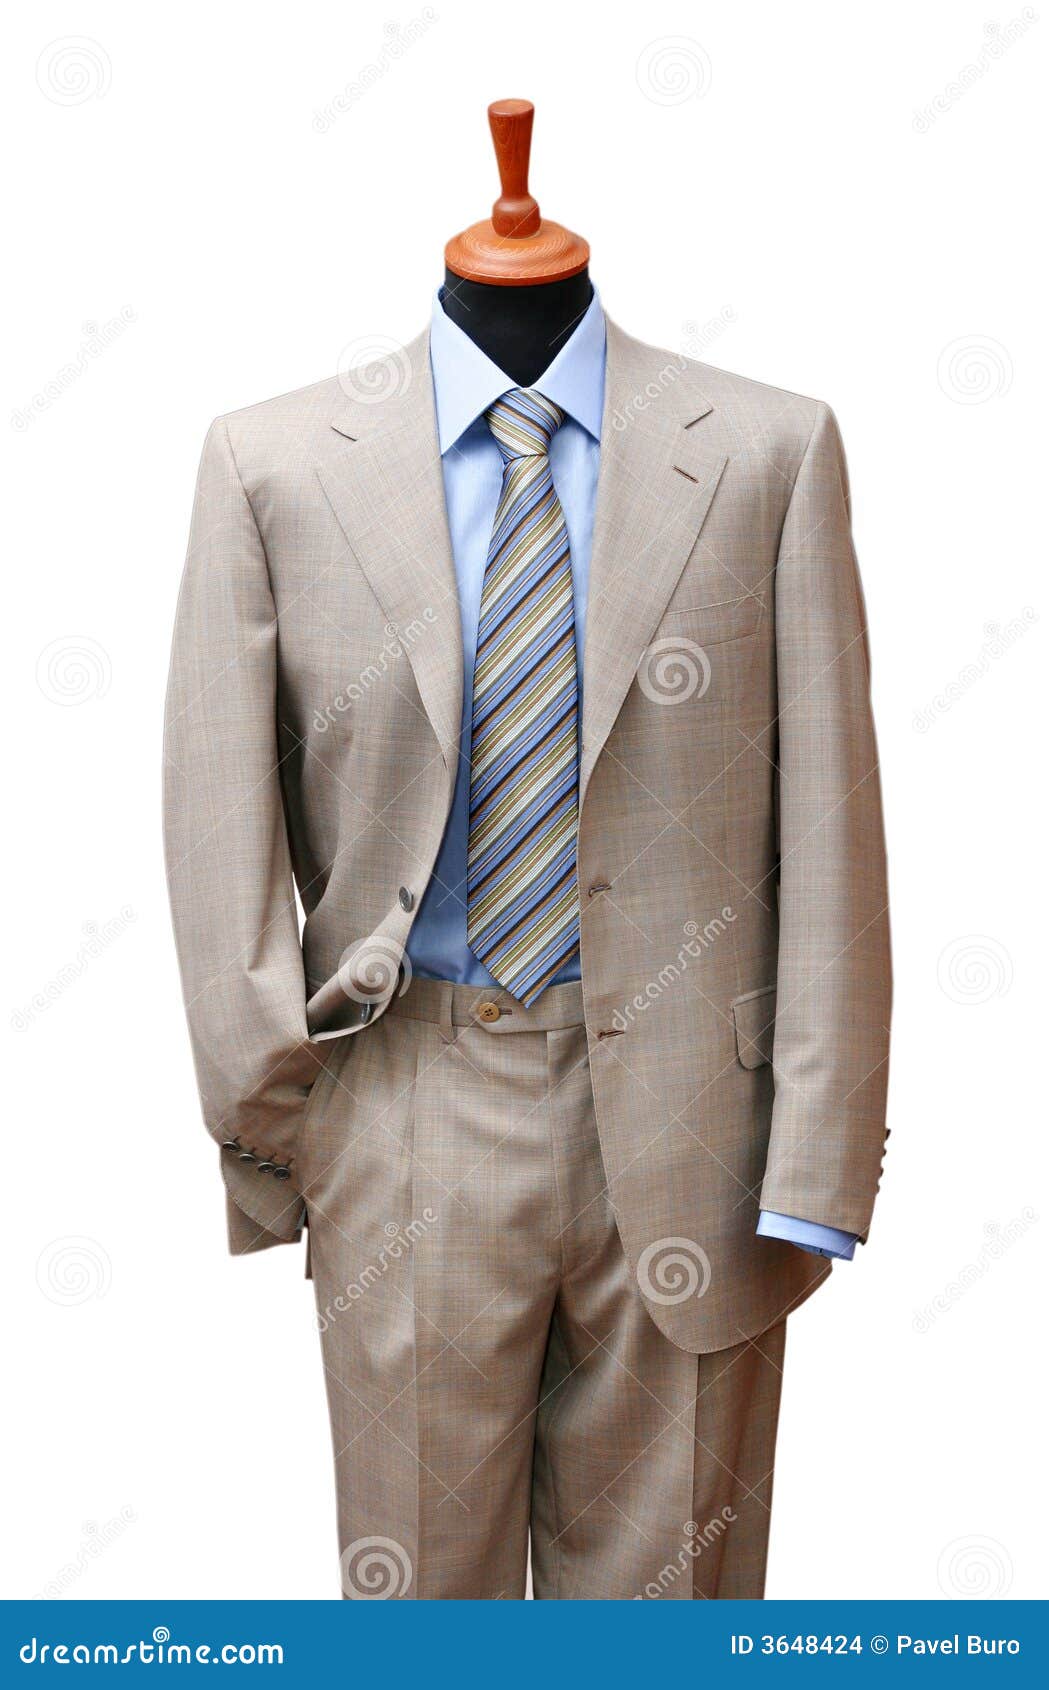 posh suit on shop mannequin